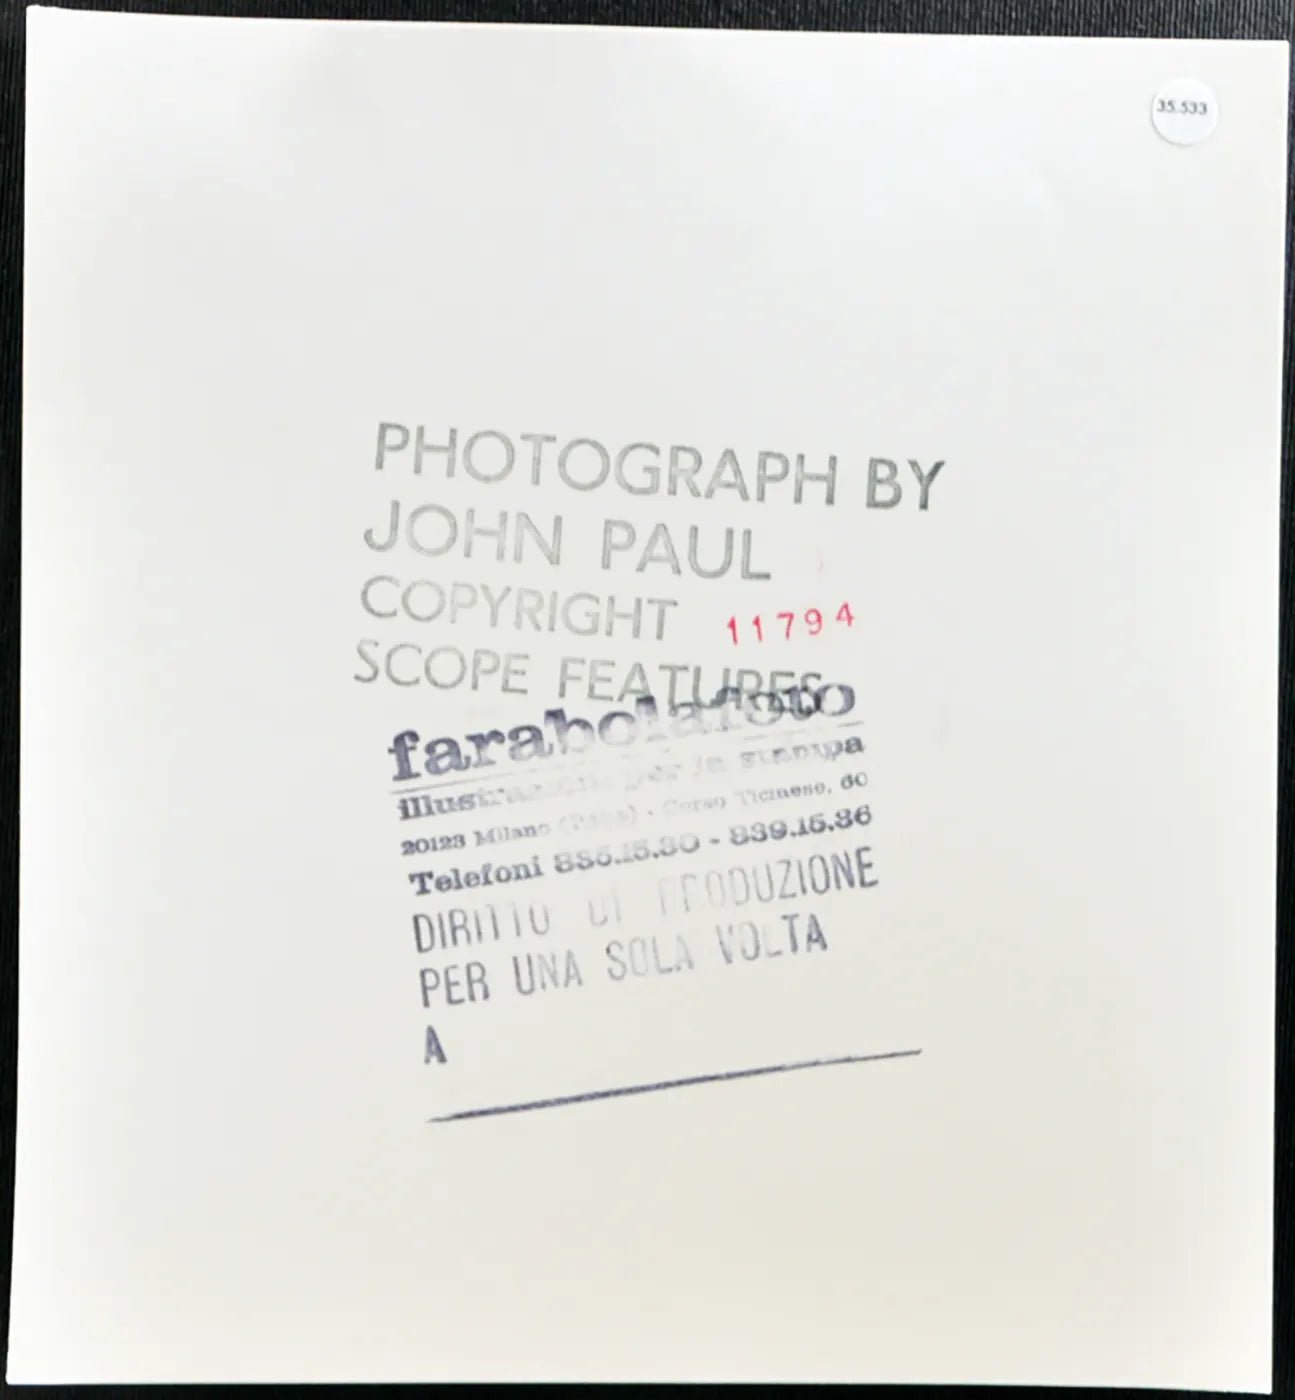 Amanda Renny Modella anni 80 Ft 35533 - Stampa 20x20 cm - Farabola Stampa ai sali d'argento